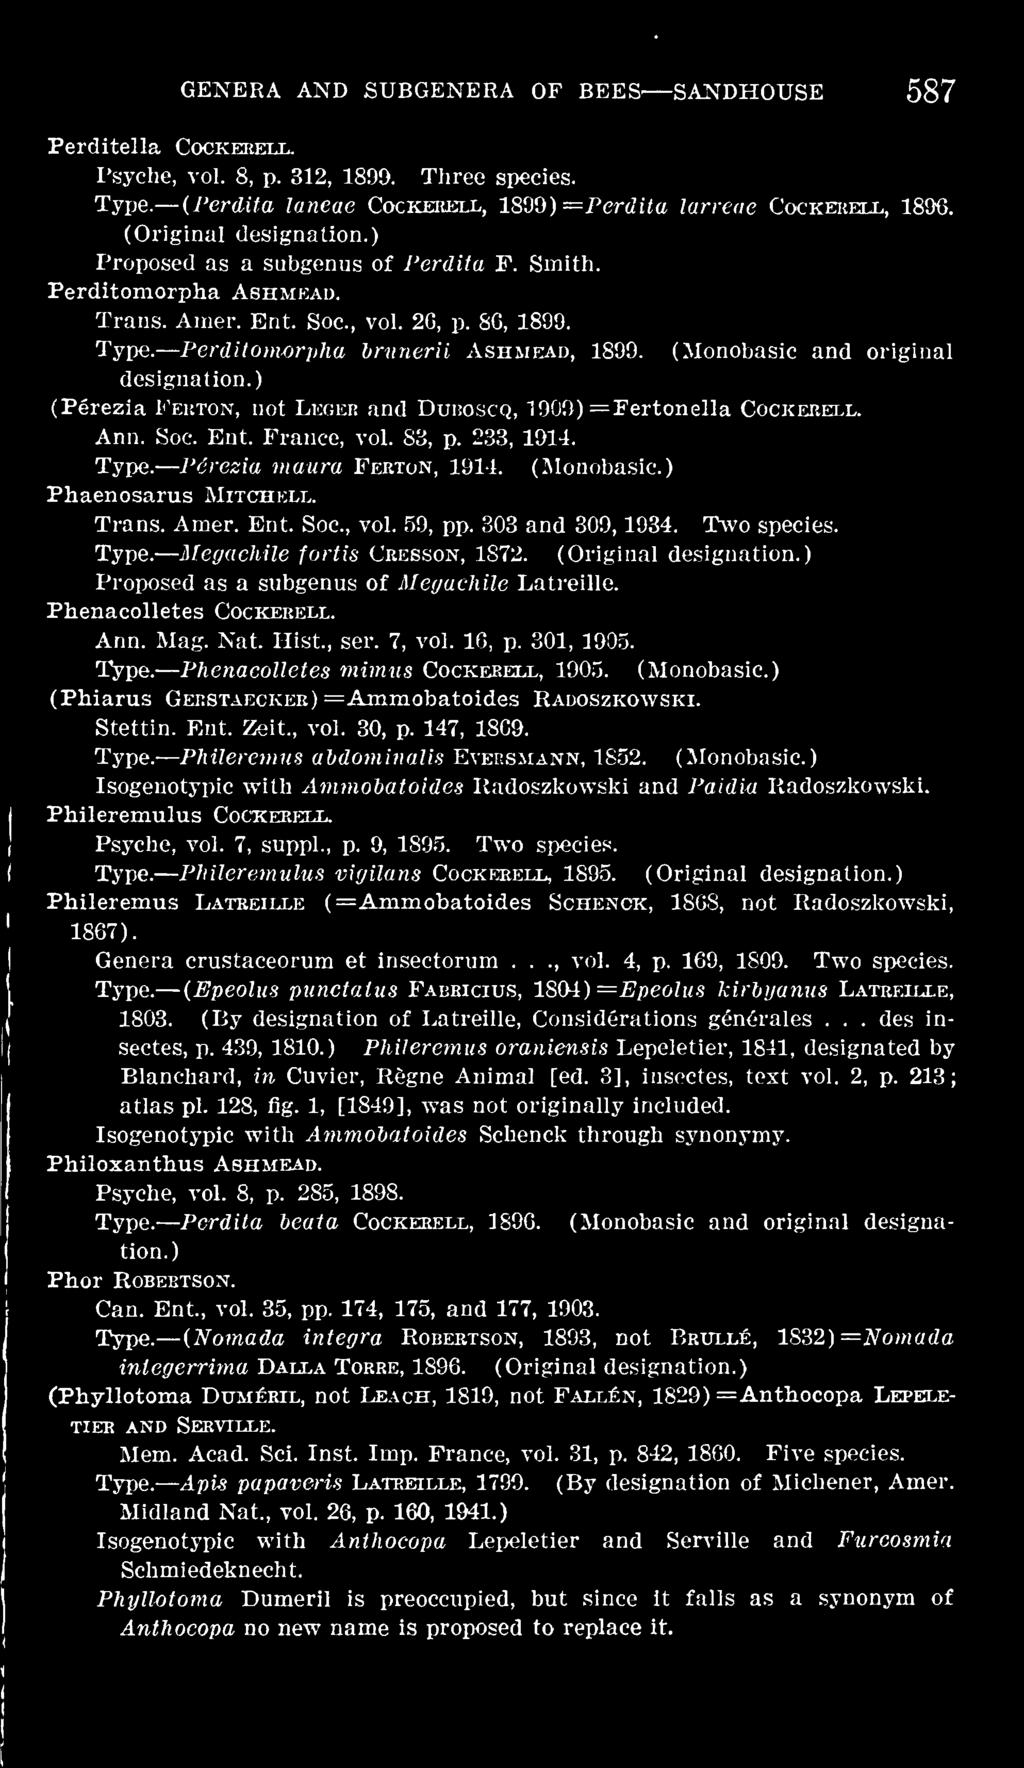 Phenacolletes Cockeeell. Ann. Mag. Nat. Hist., ser. 7, vol. 16, p. 301, 1905. Phenacolletes mimus Cockeeell, 1905. (Monobasic.) (Phiarus Gekstaeckeb) = Ammobatoides Rauoszkowski. Stettin. Ent. Zeit.